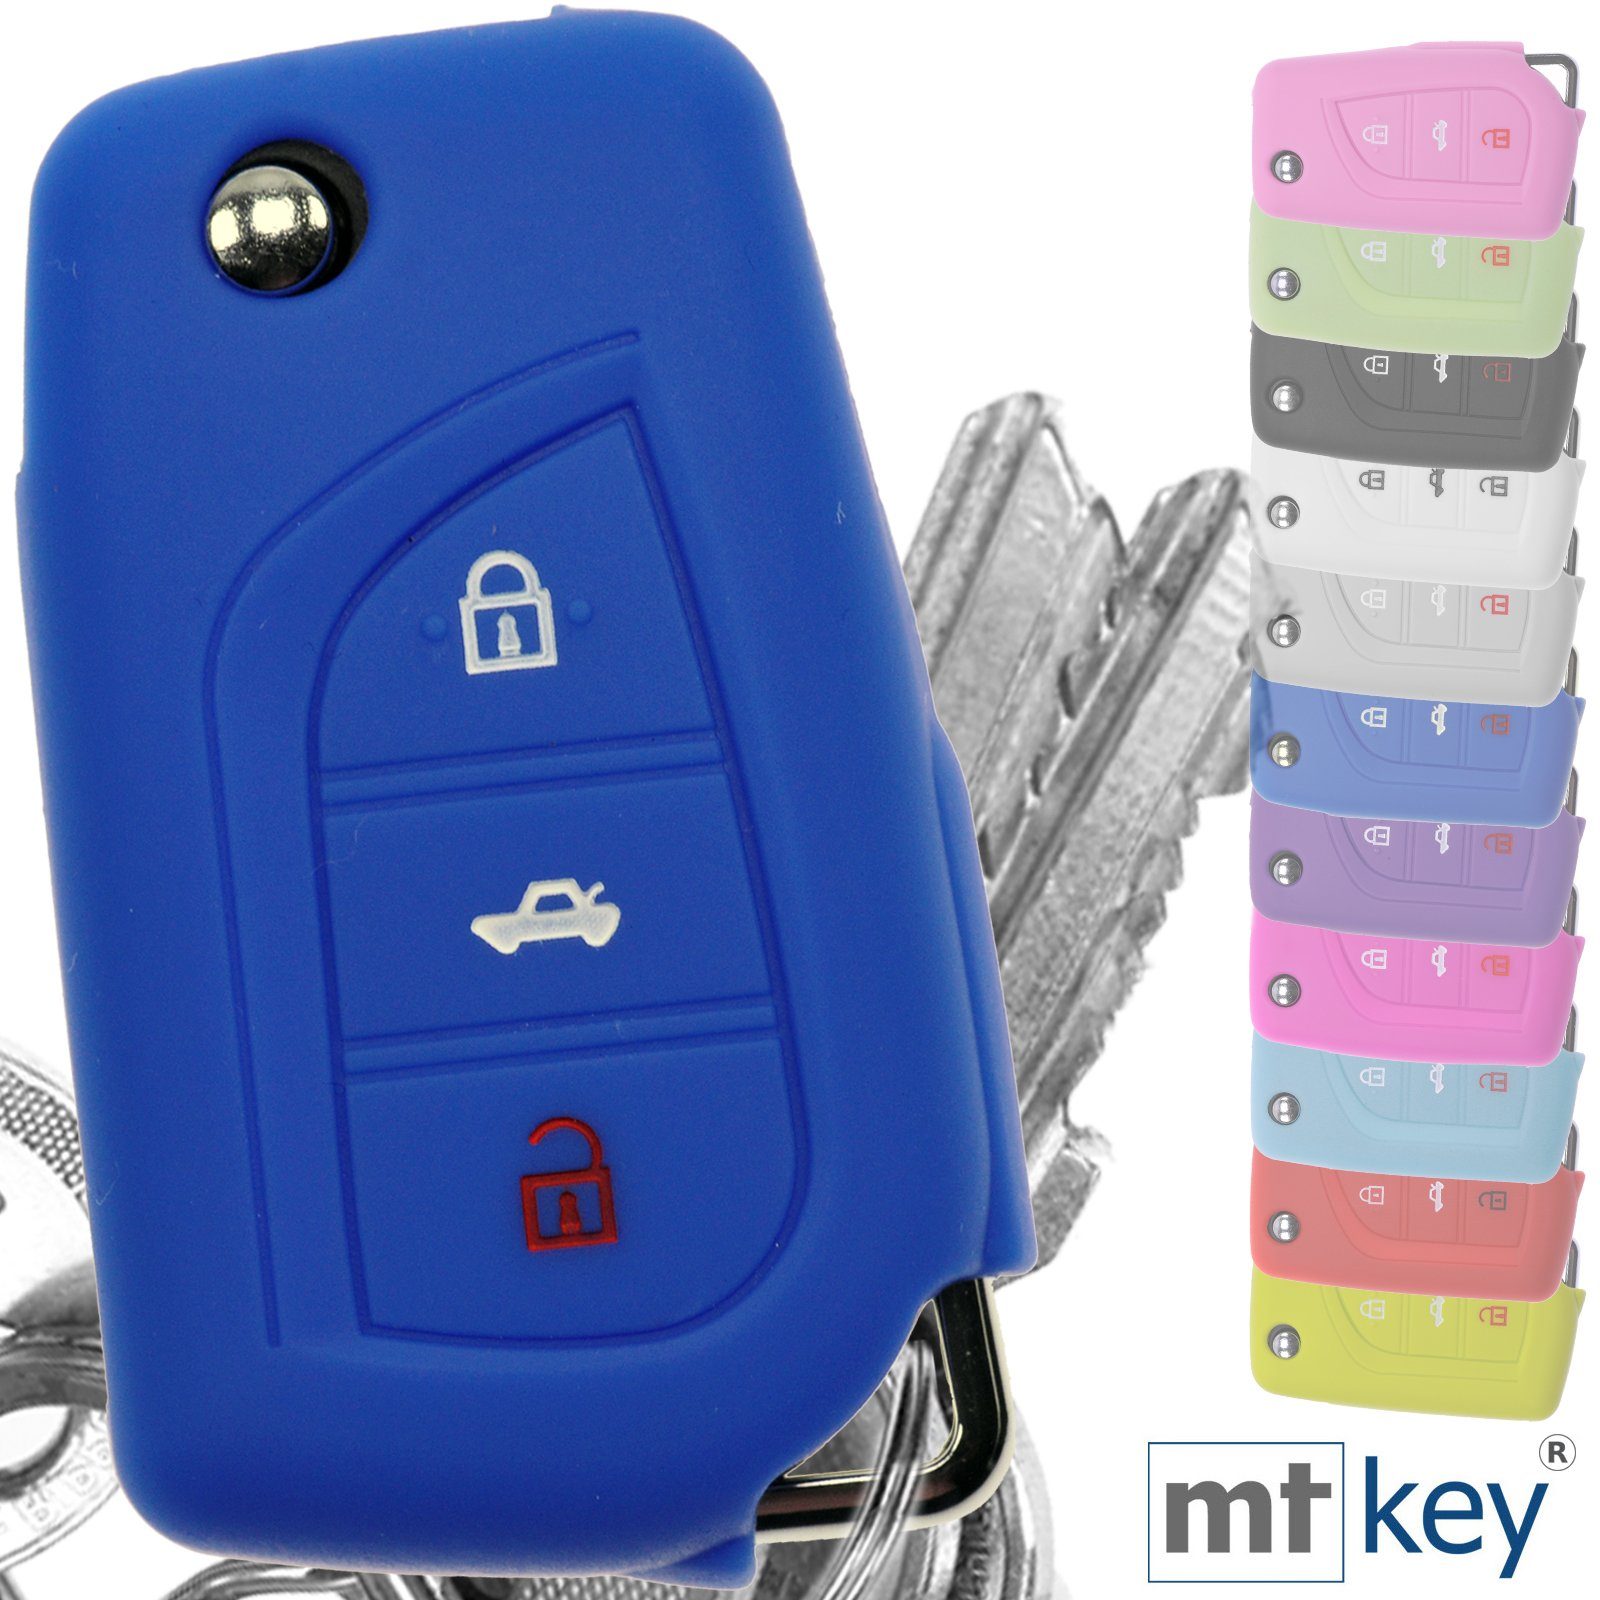 Blau, Softcase Silikon 3 Autoschlüssel Schutzhülle für Tasten Toyota AURIS Klappschlüssel Corolla mt-key Schlüsseltasche Avensis